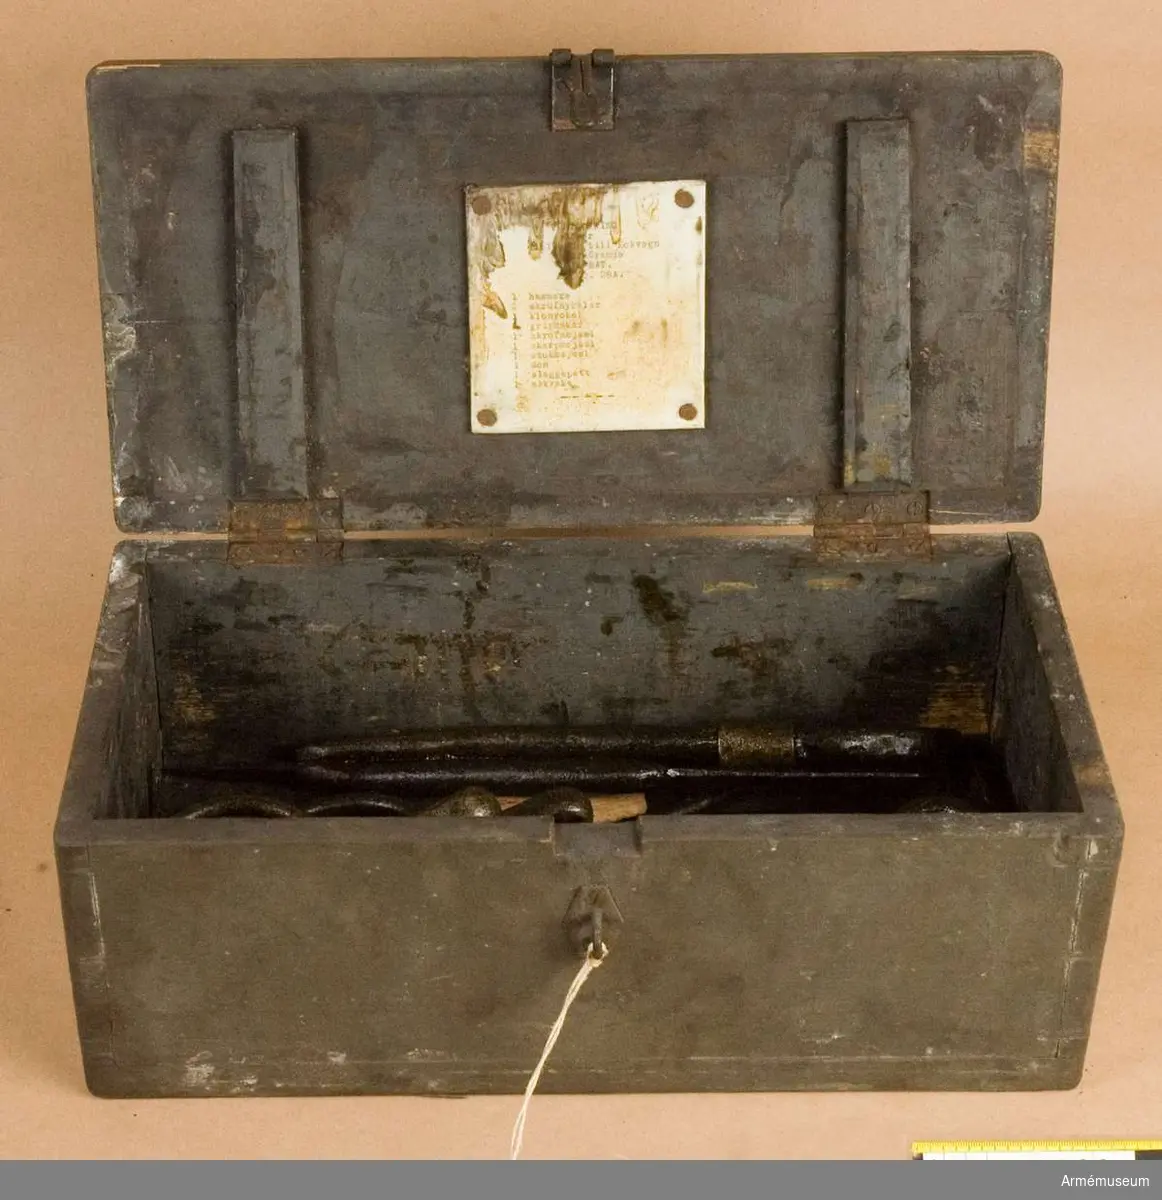 Tillbehören består av bland annat hammare, askraka m.m. Samtliga föremål ligger i en låda.